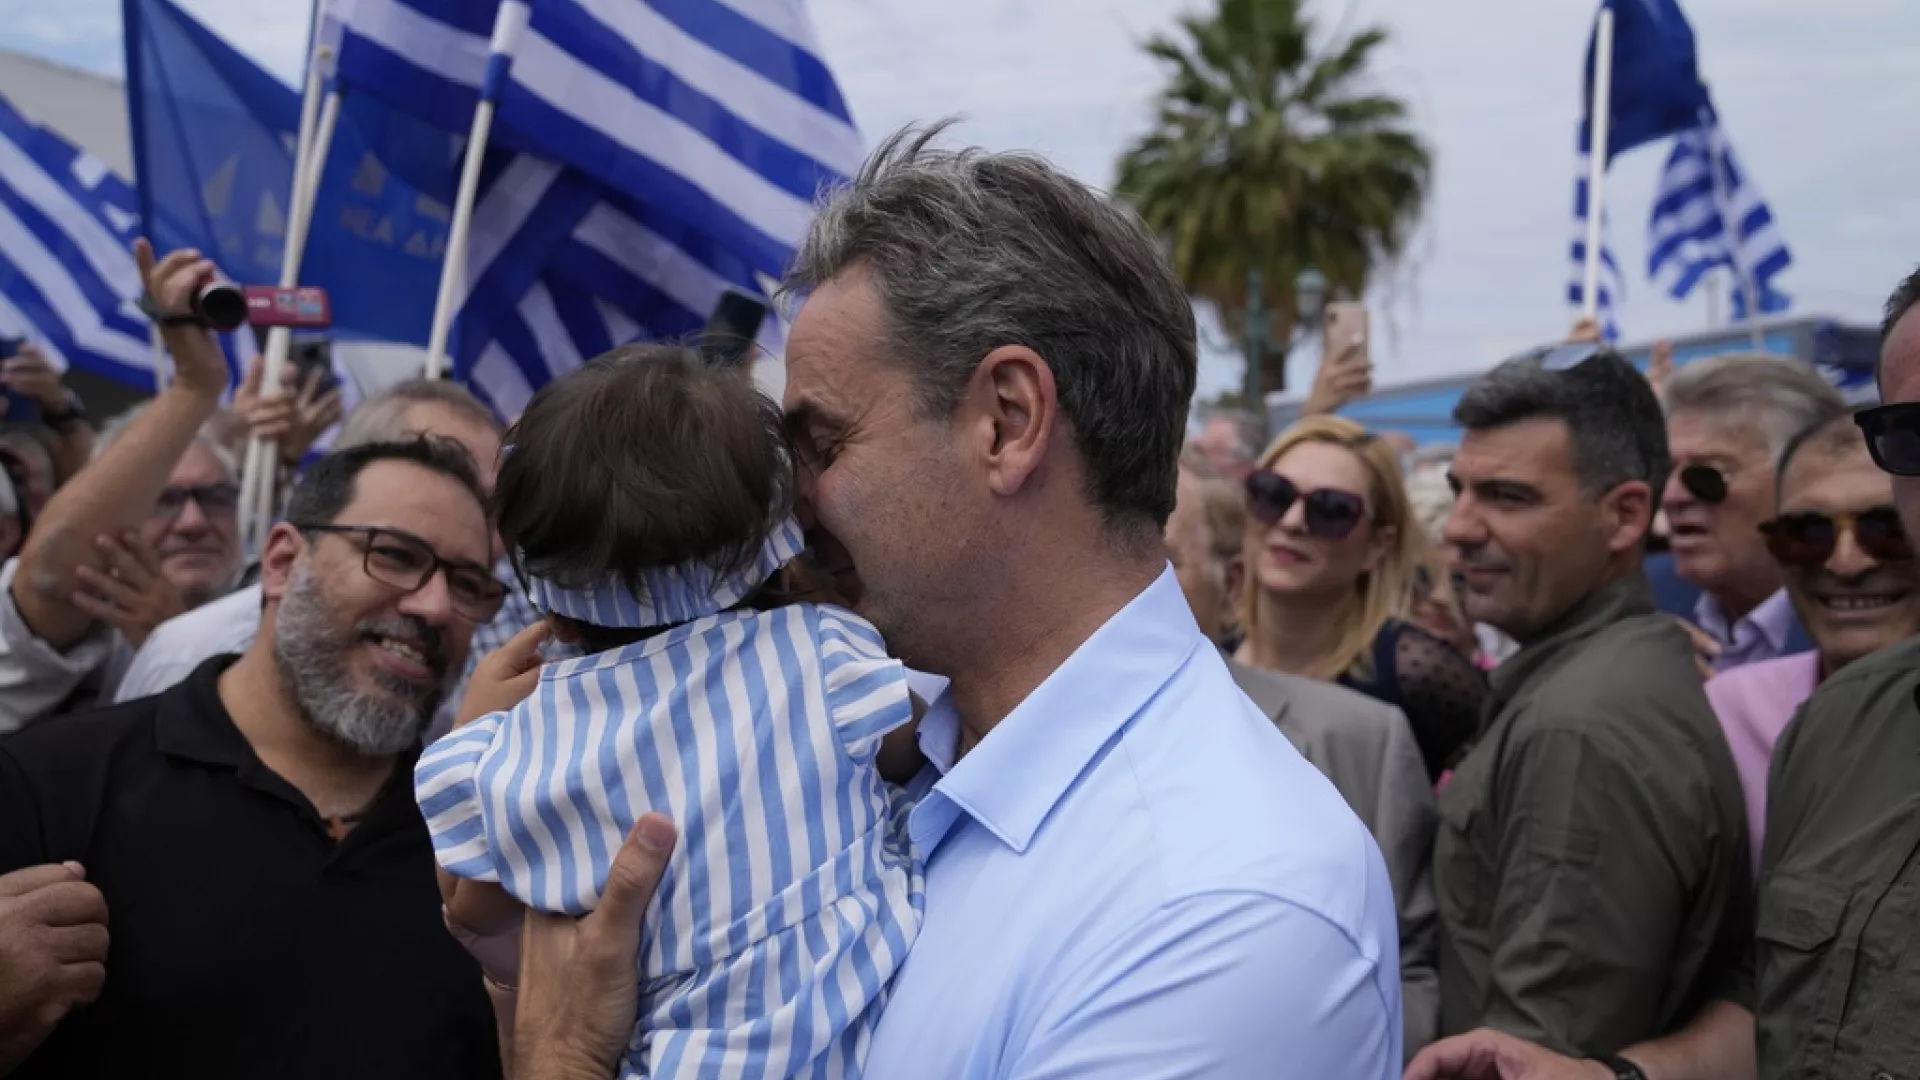 Yunanistan’da doğum oranları son 92 yılın en düşüğünde; hükümet çözüm arayışında